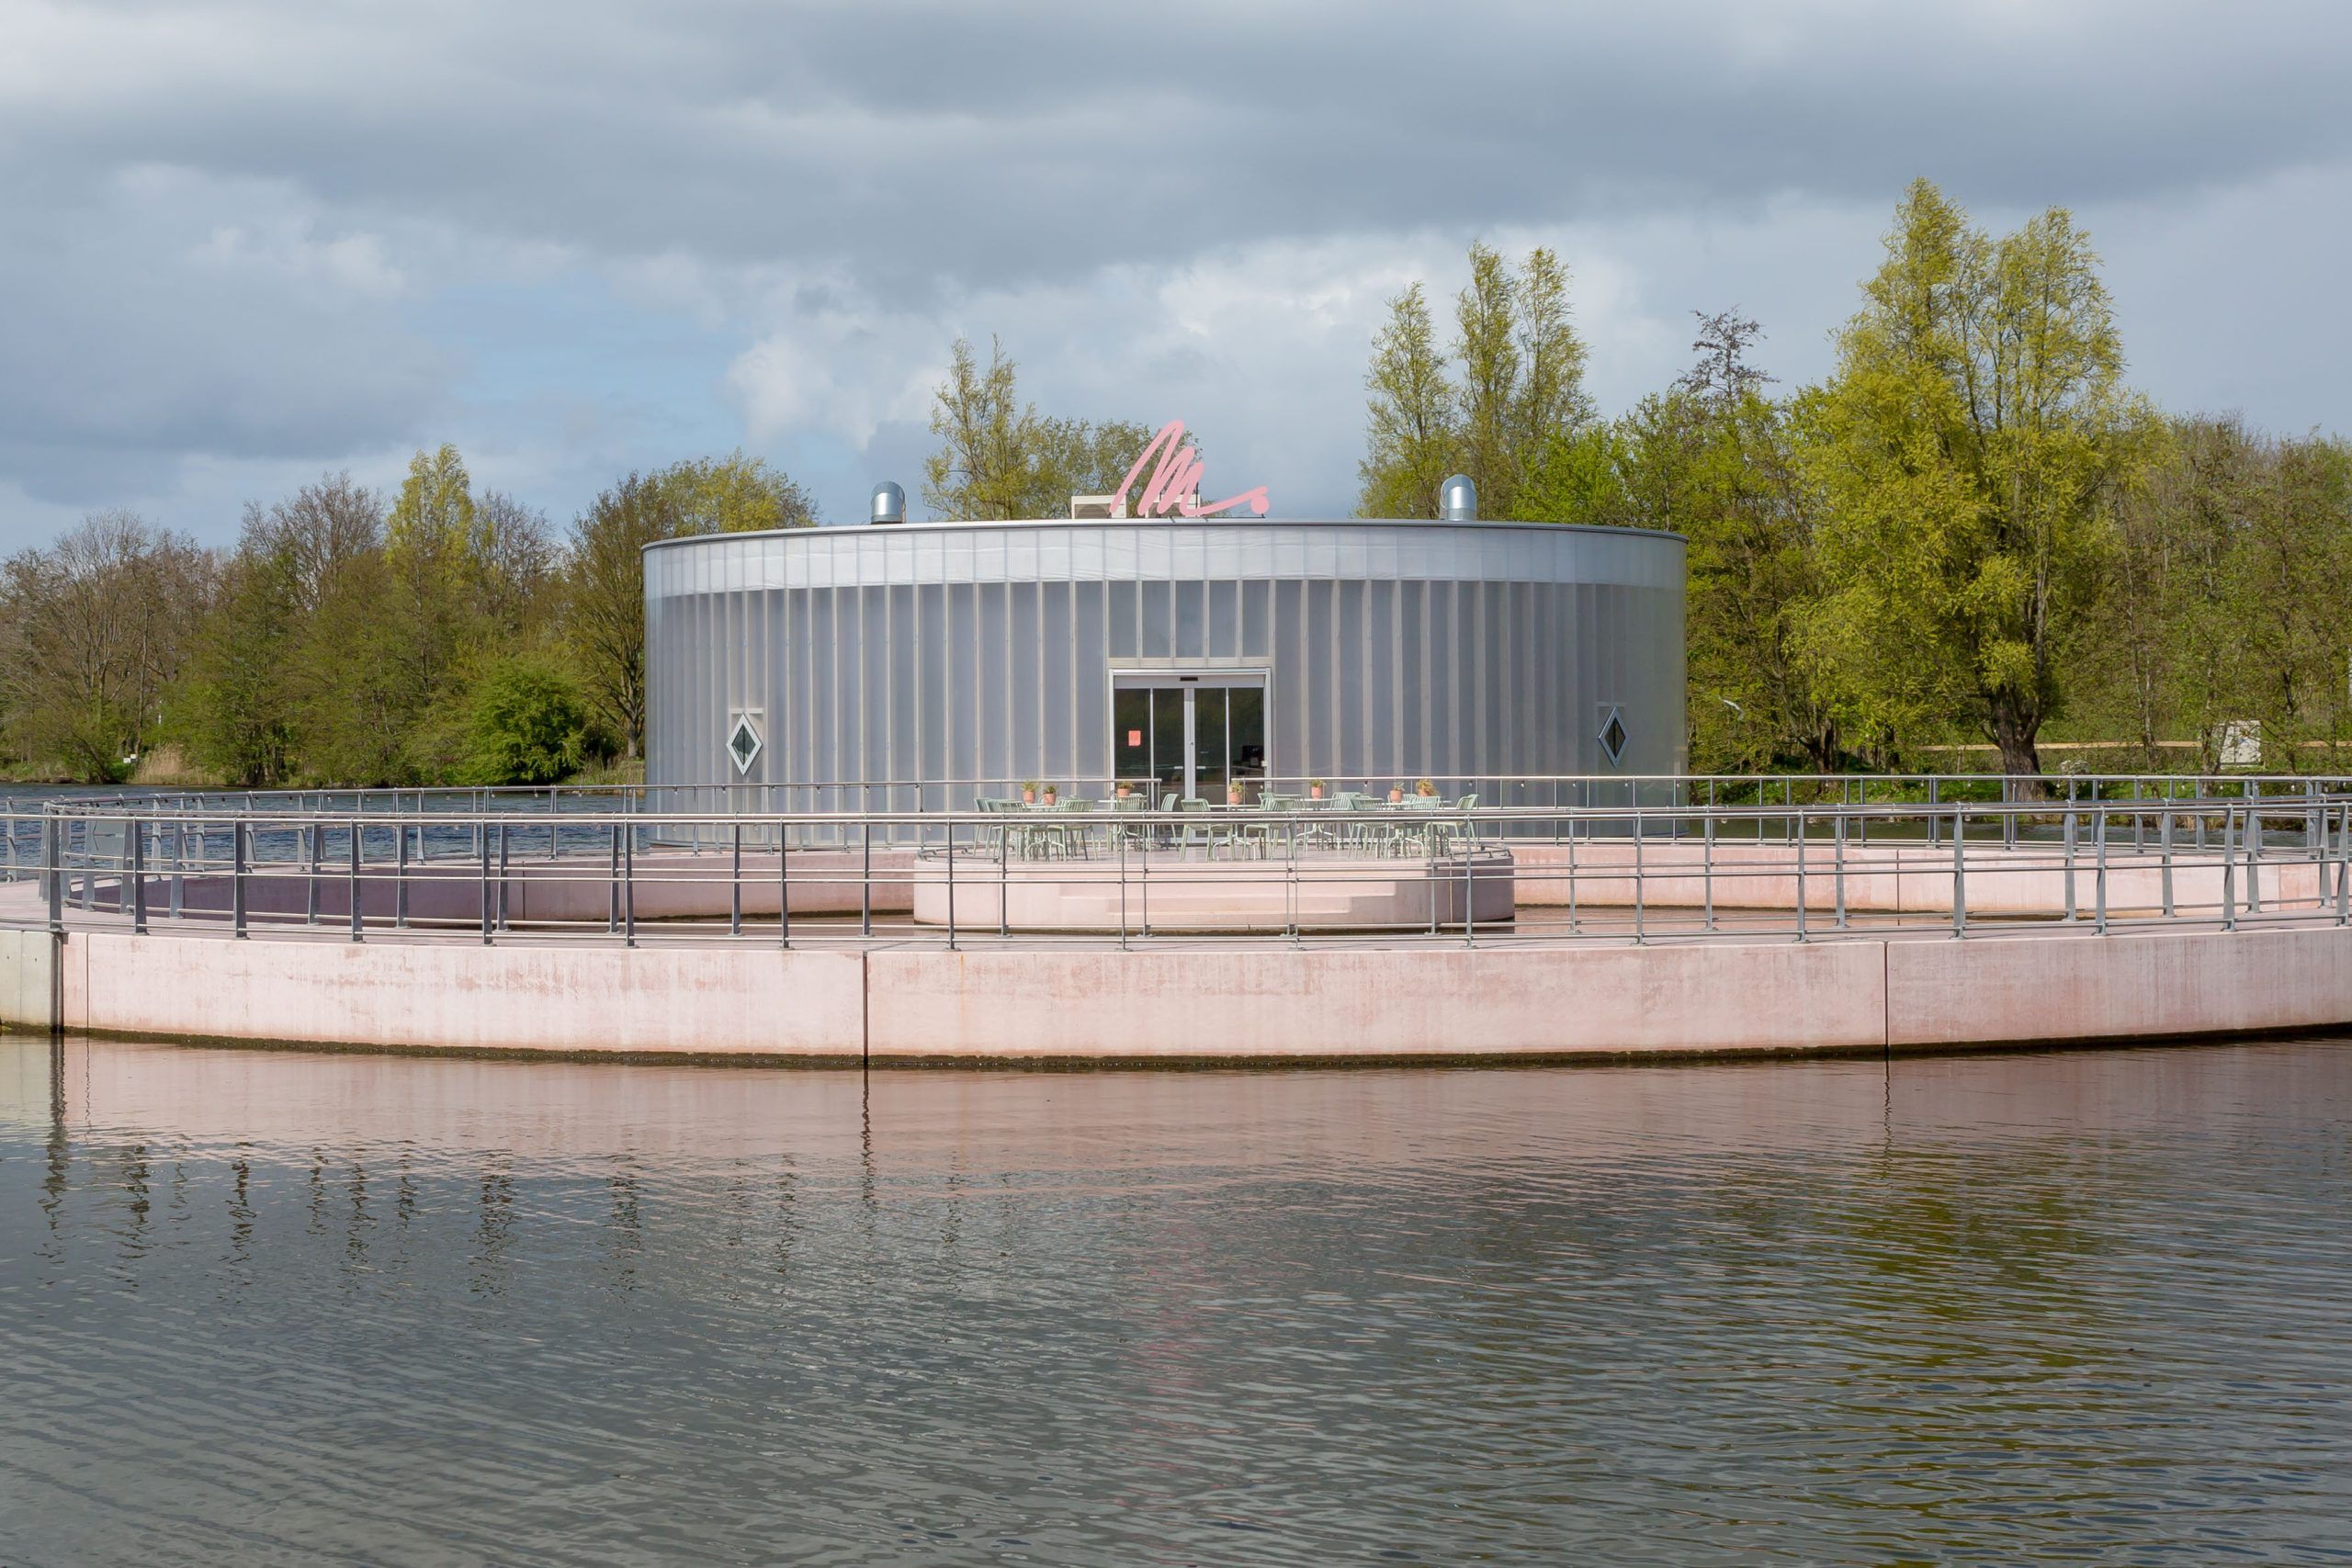 vooraanzicht van het kunstmuseum M. een rond paviljoen in het water met reling en een roze M. op het dak